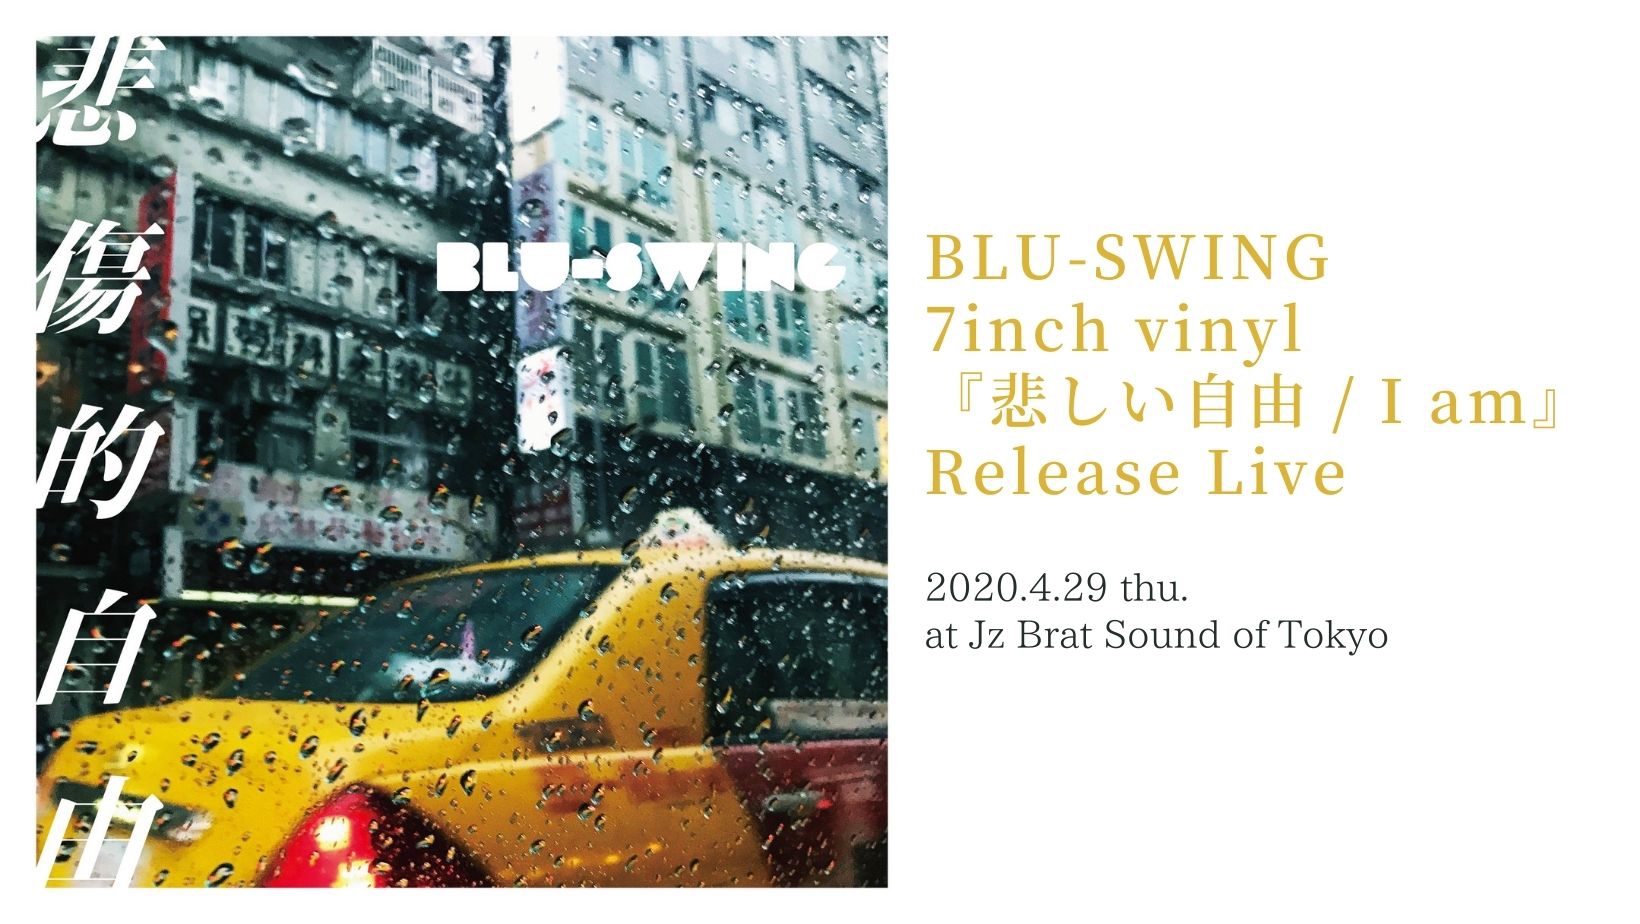 LIVE】4/29 BLU-SWING 7inch vinyl『悲しい自由 / I am』Release